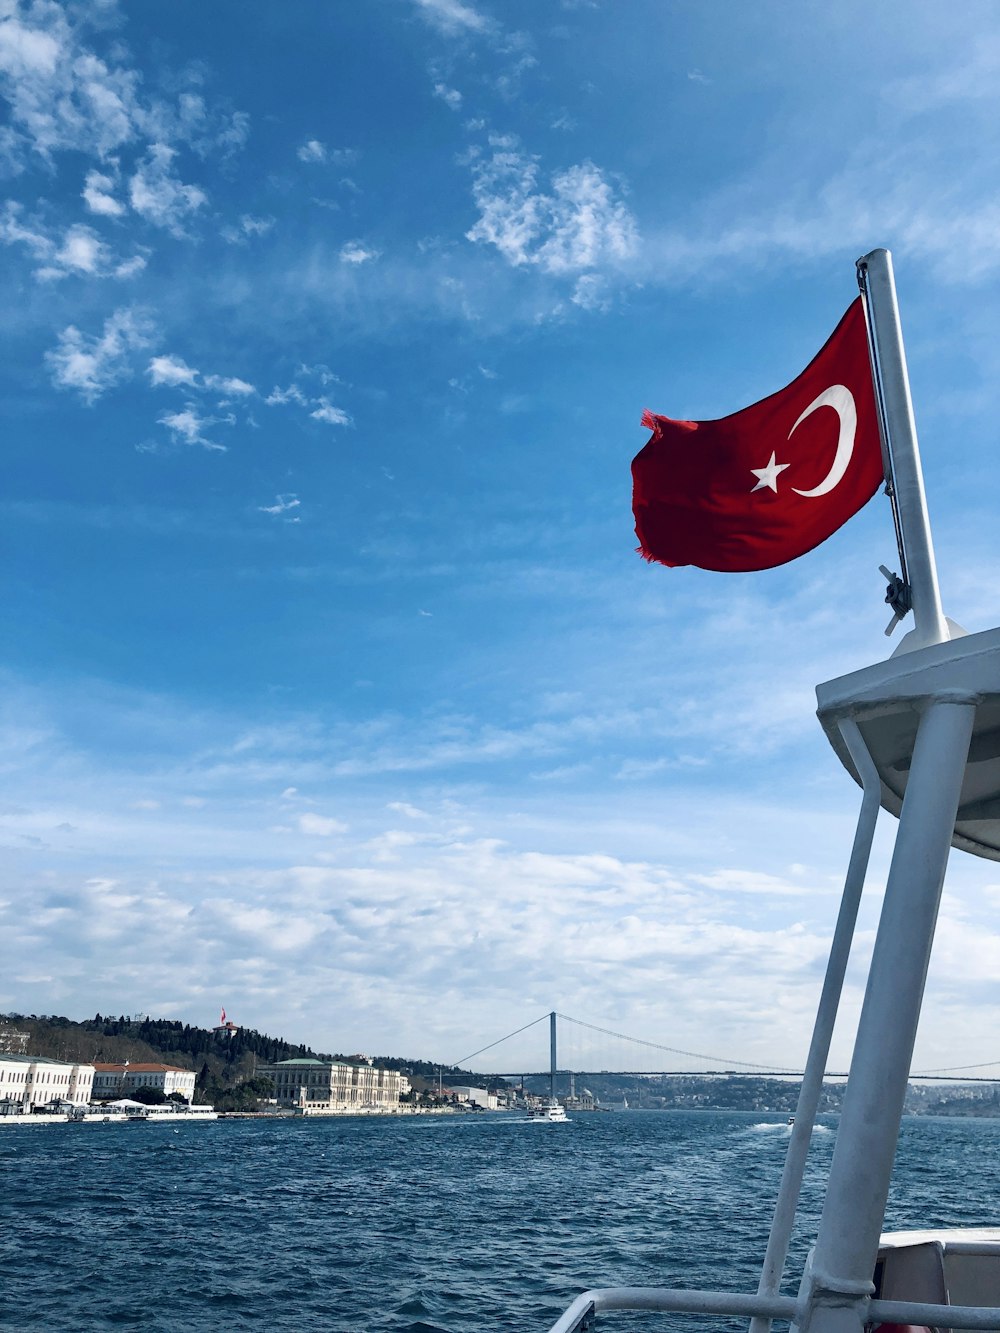 ボートの側面に飛んでいるトルコの旗